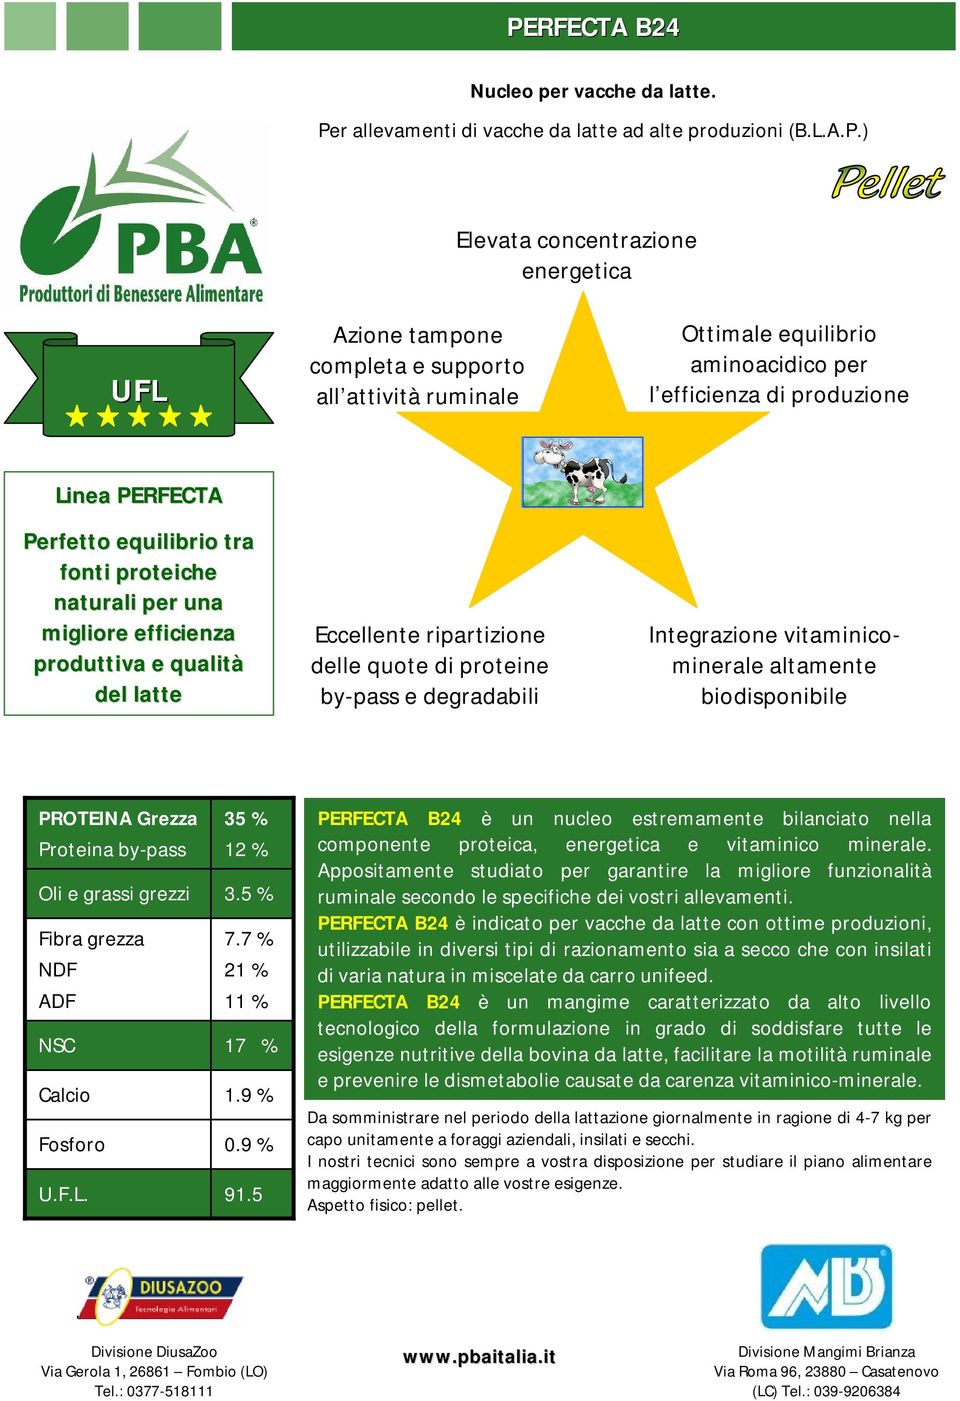 ripartizione delle quote di proteine by-pass e degradabili Integrazione vitaminicominerale altamente biodisponibile PROTEINA Grezza 35 % 12 % 3.5 % 7.7 % 21 % 11 % 17 % 1.9 % 0.9 % 91.